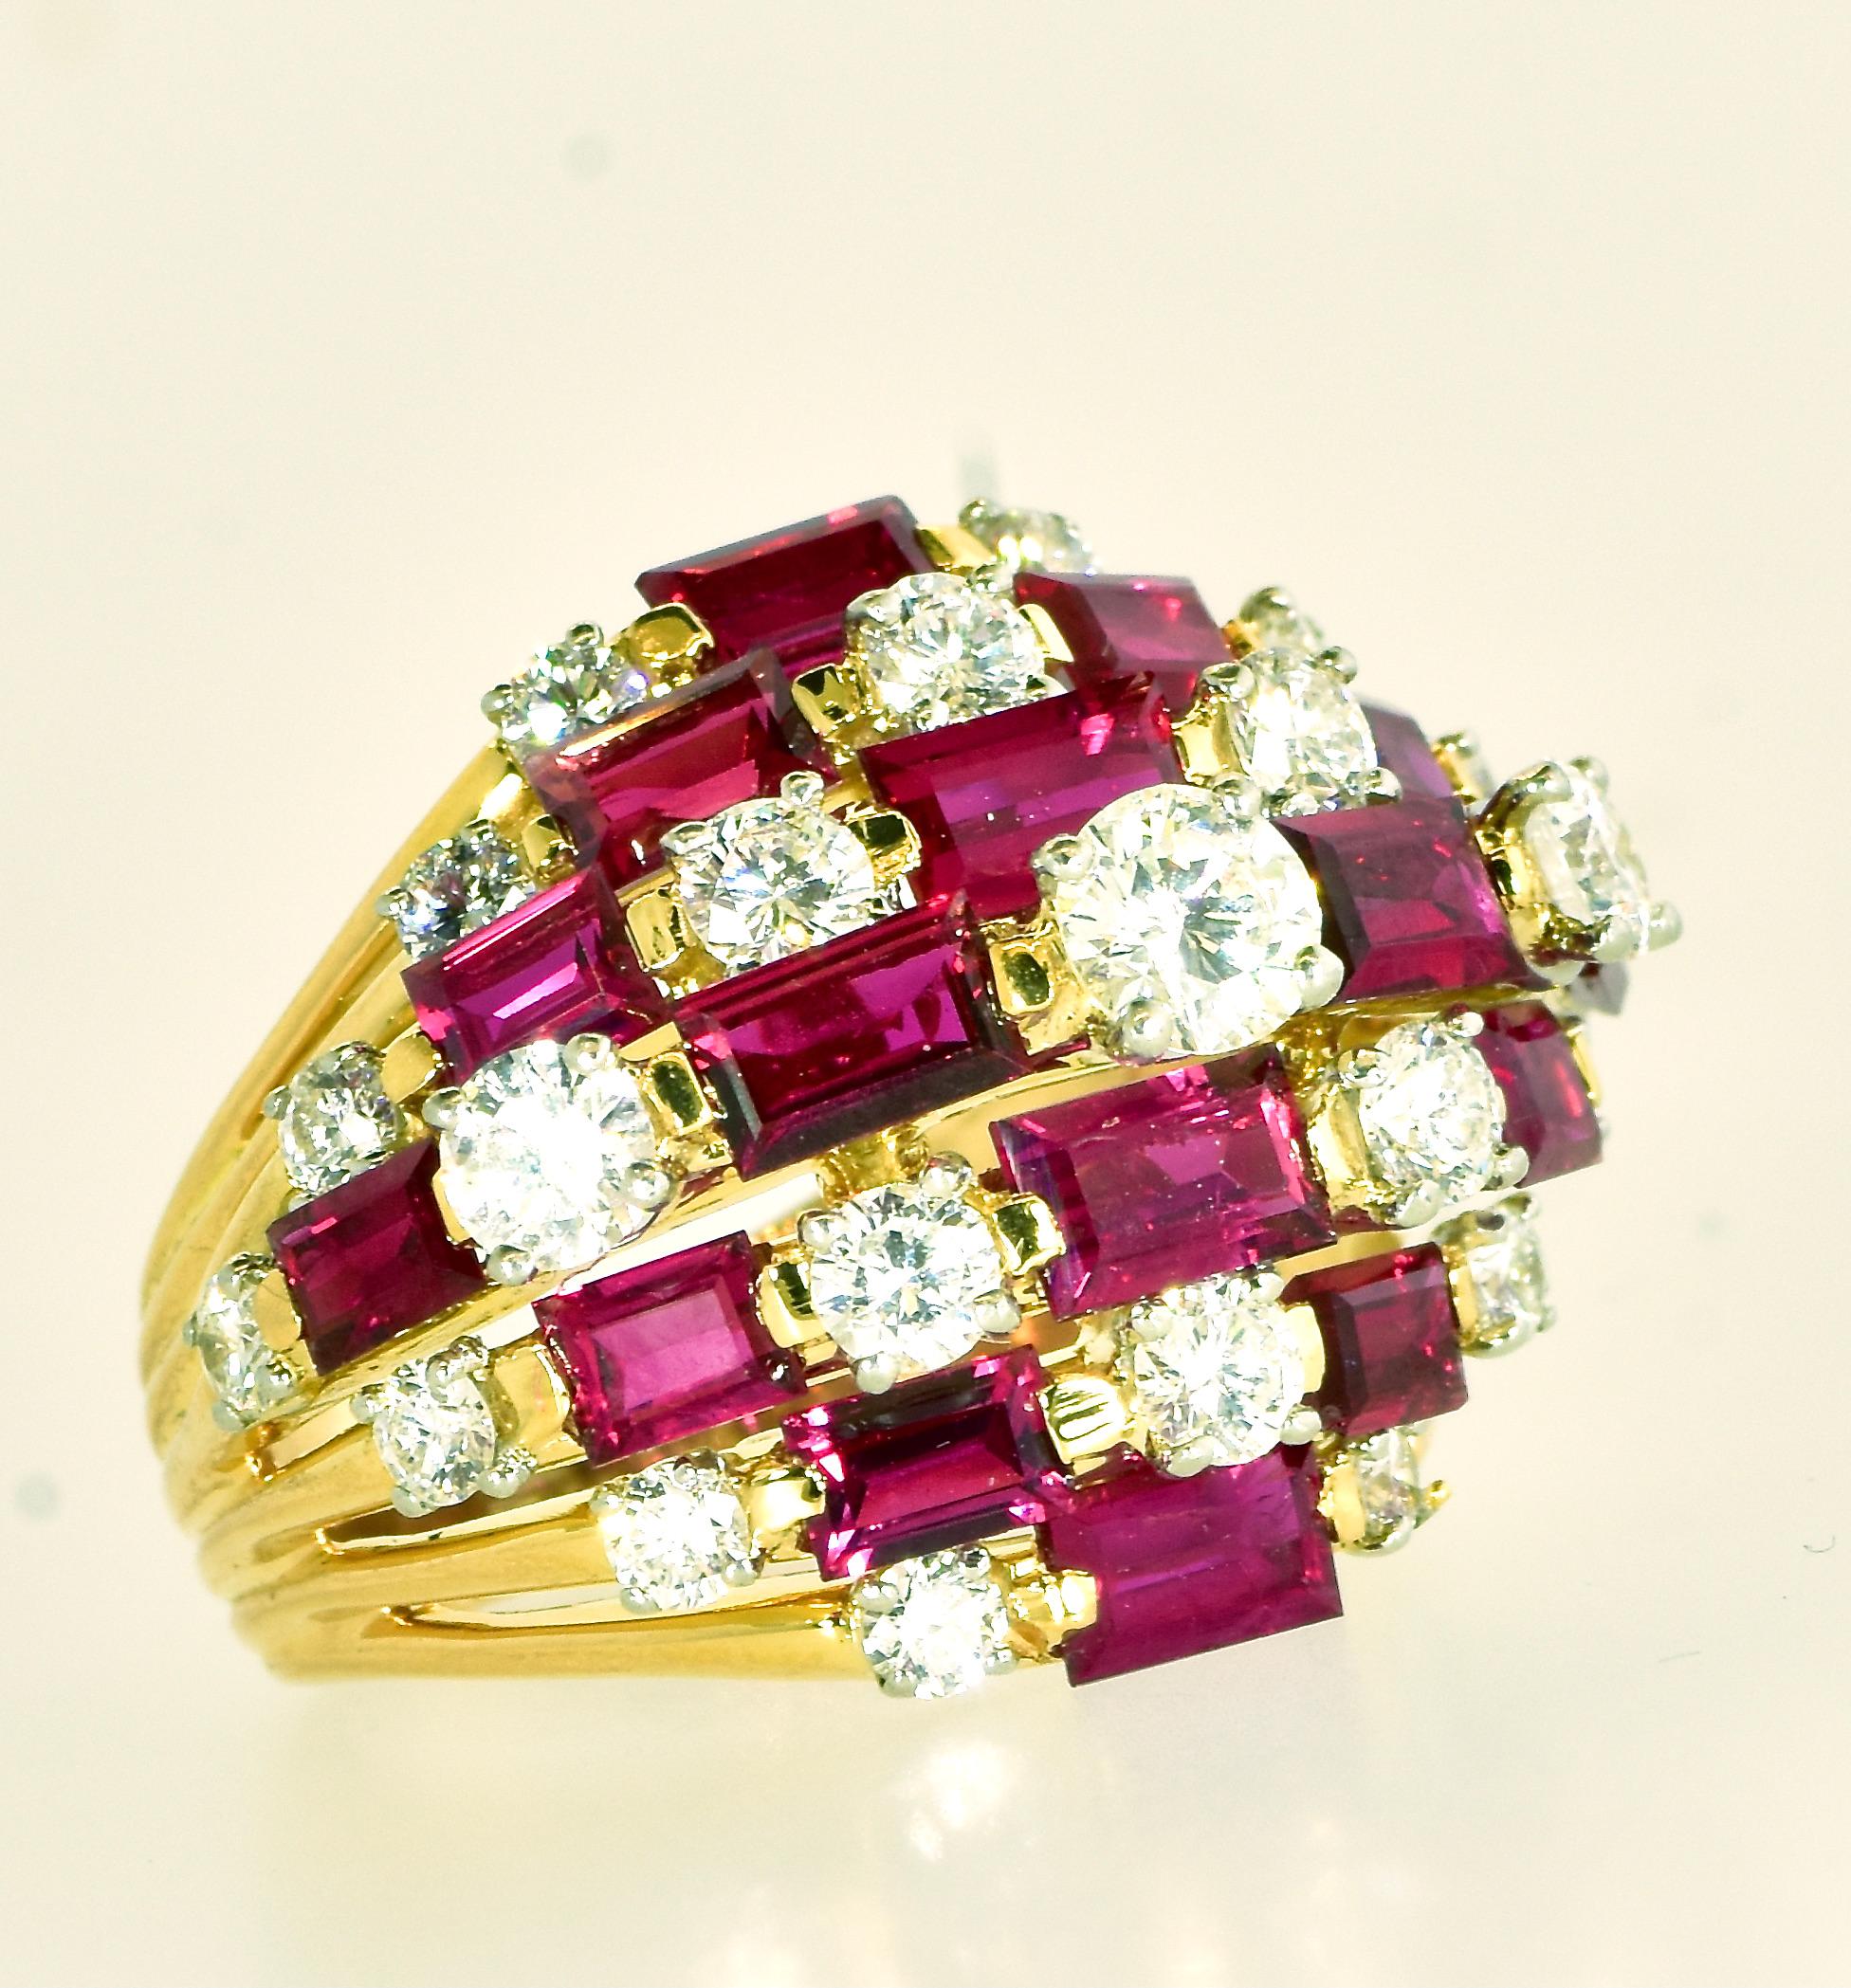 Brilliant Cut Oscar Heyman Dramatic Large 7 Row Ruby and Diamond Vintage Ring